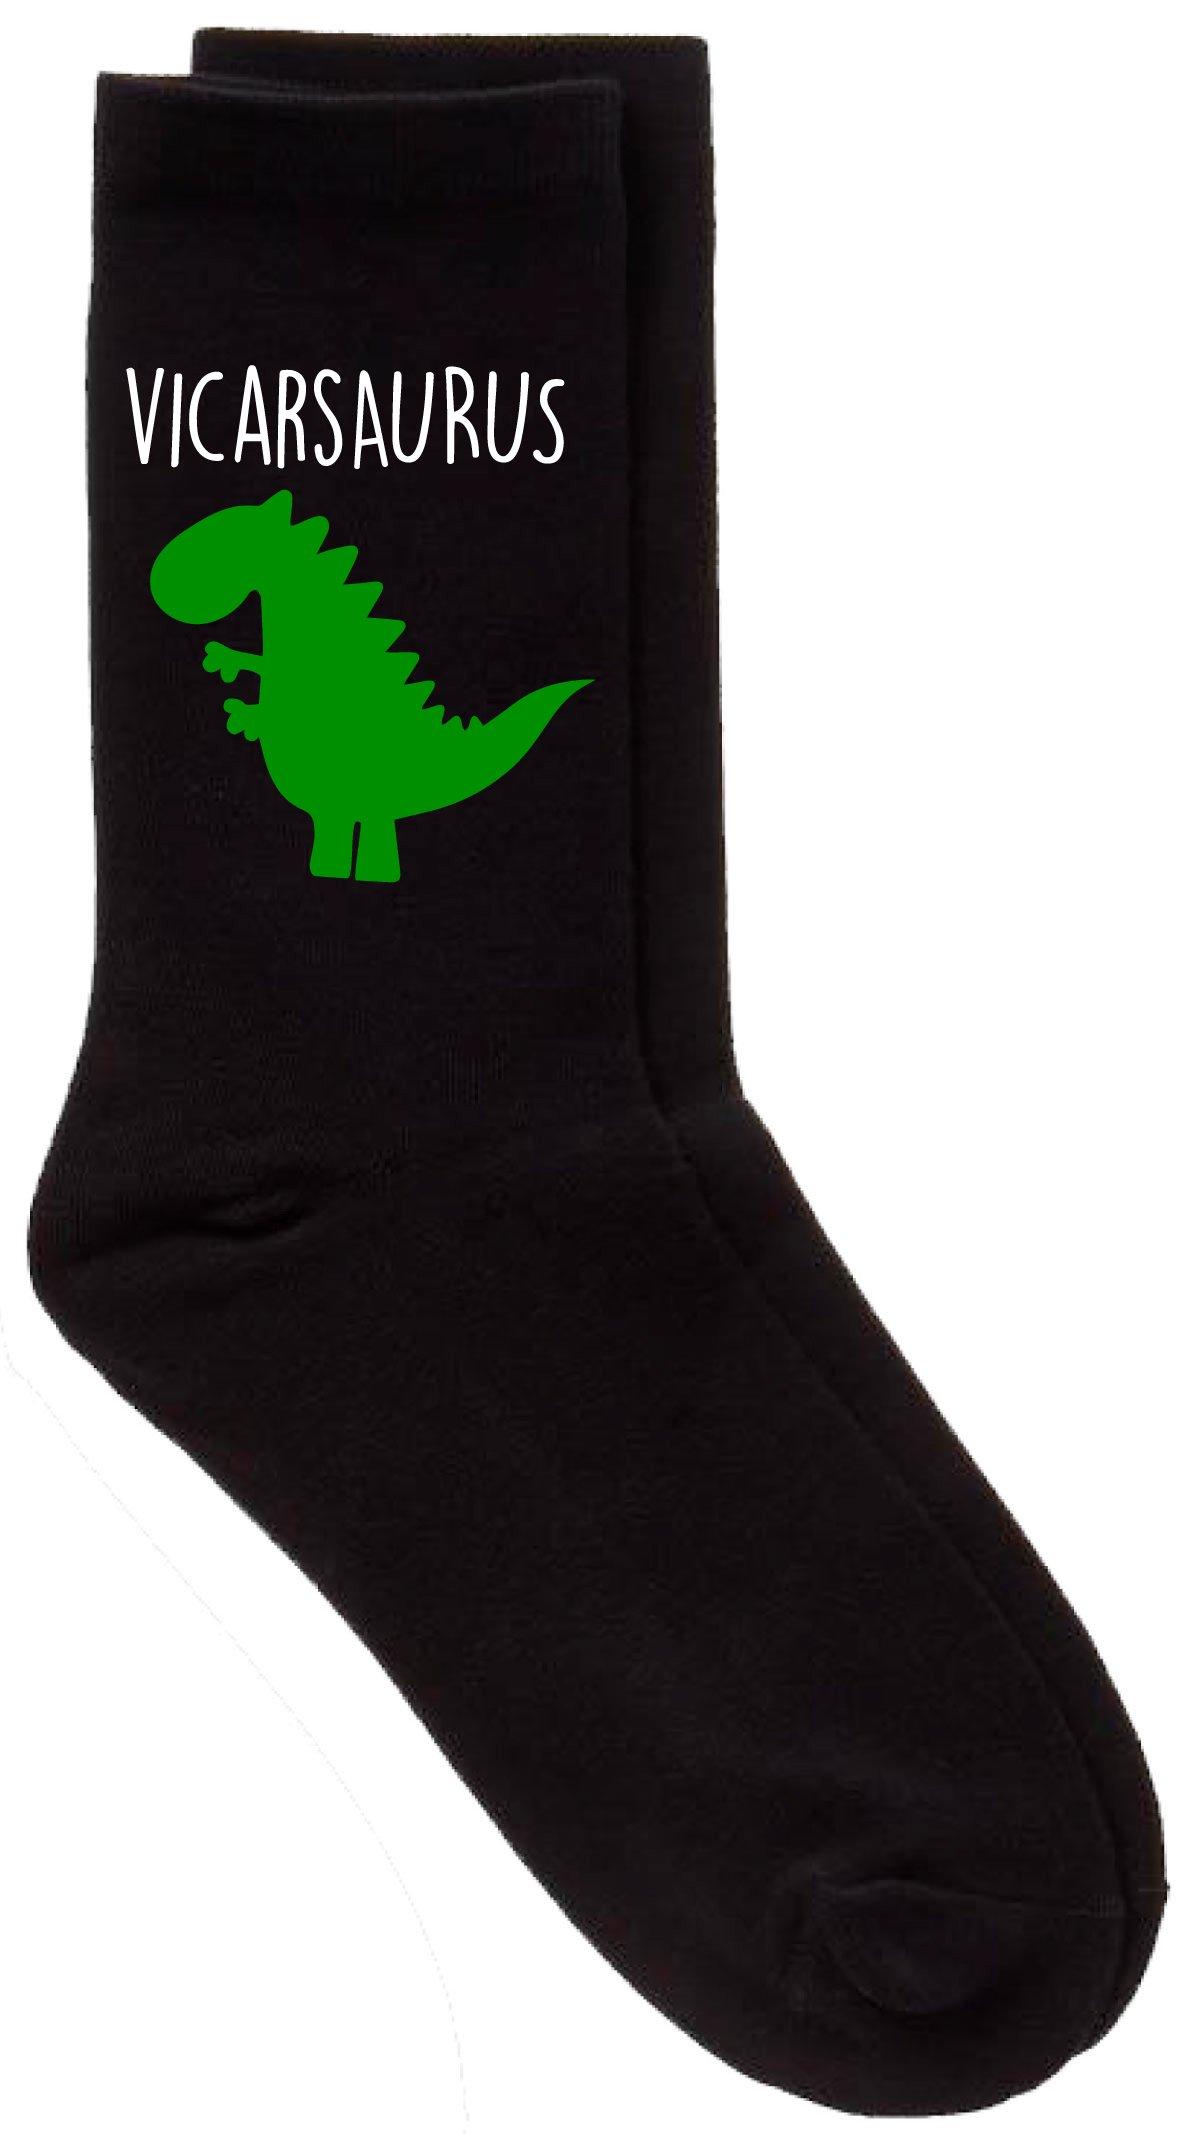 Vicar Dinosaur Vicarsaurus Black Calf Socks